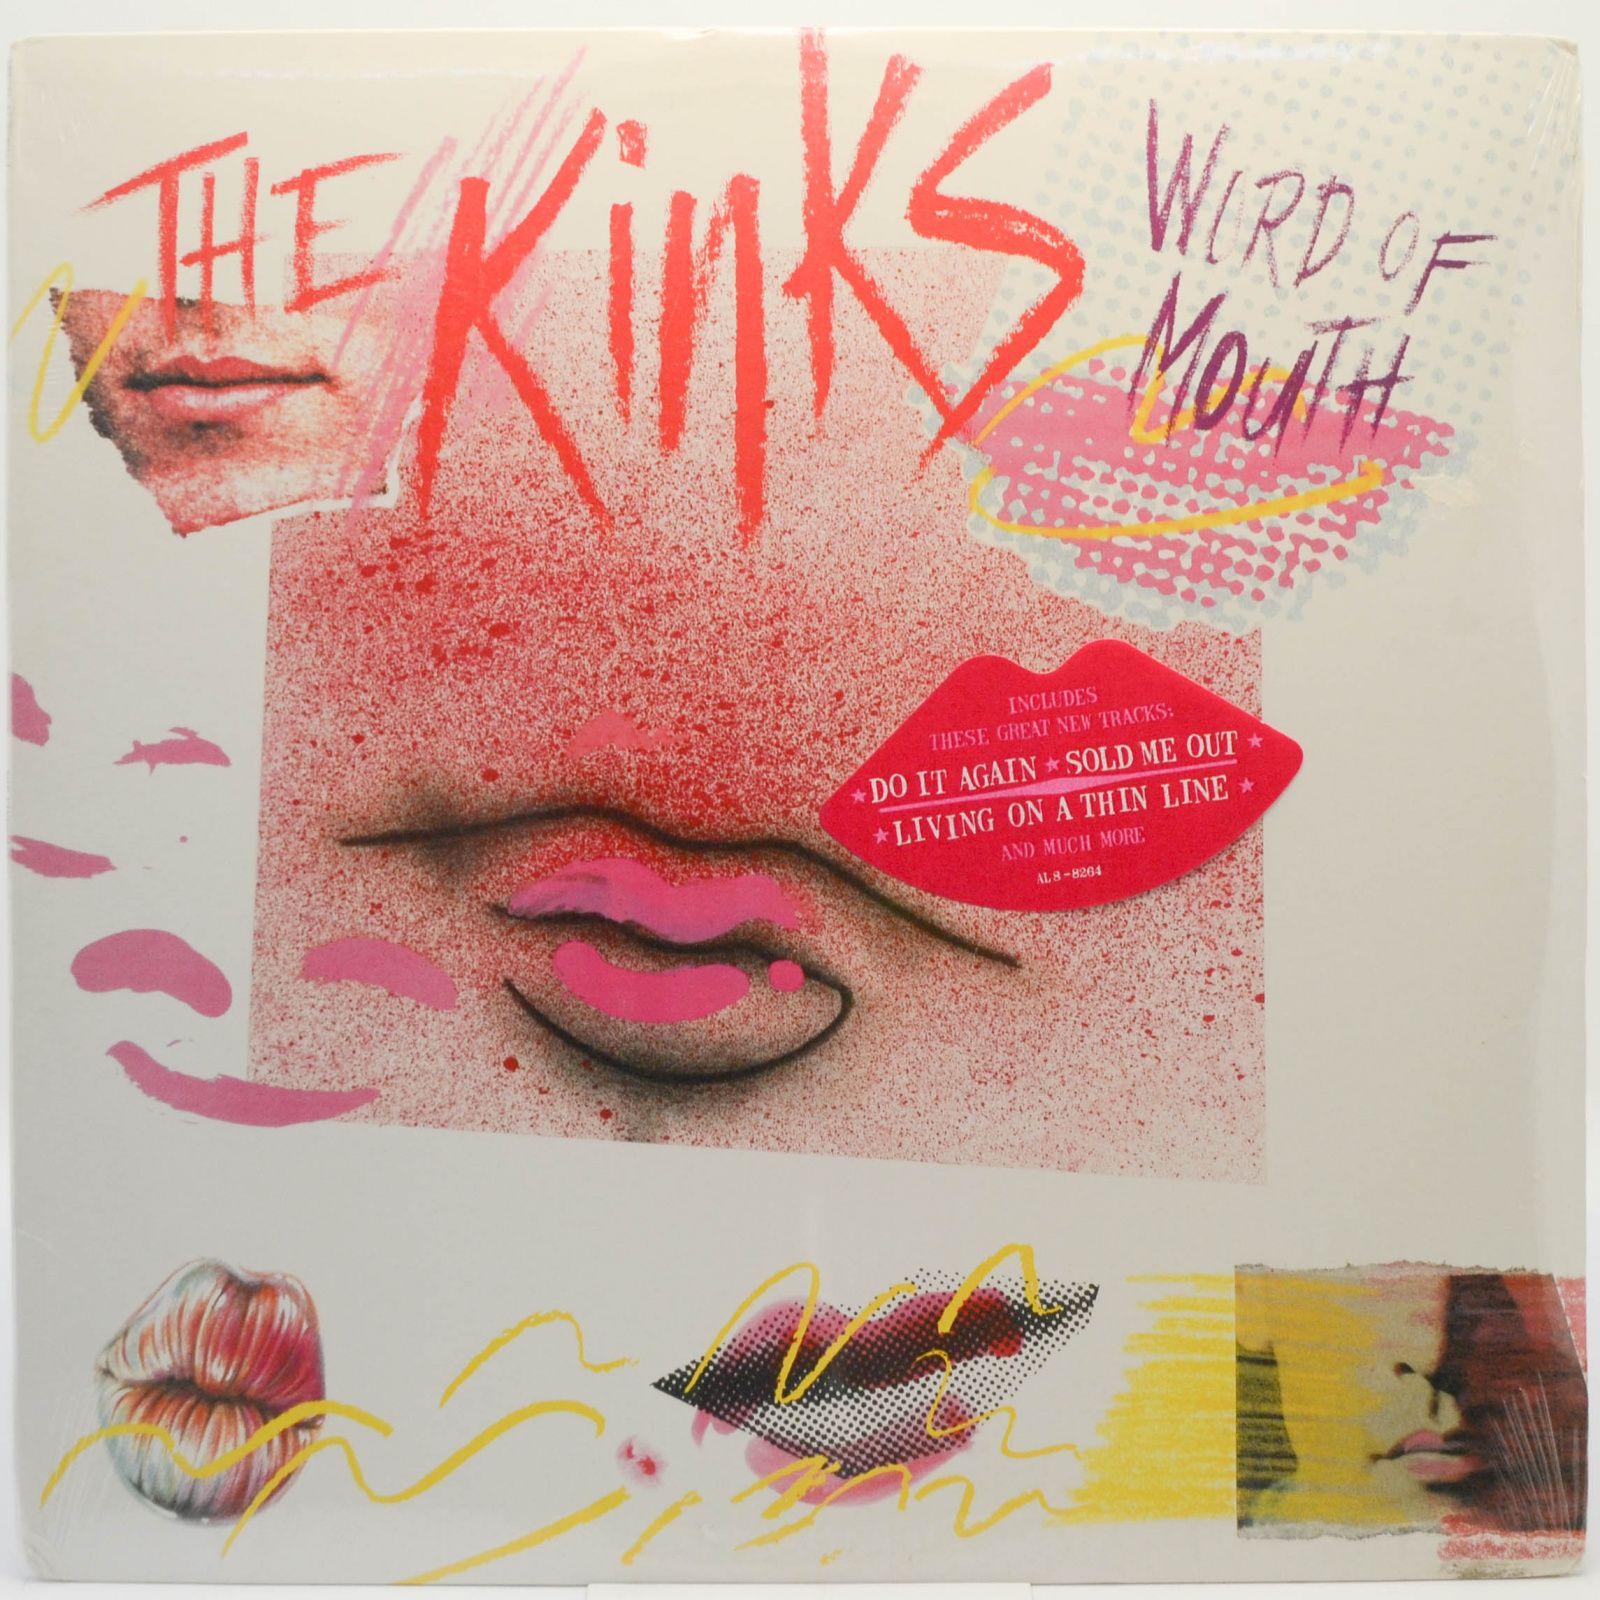 Kinks — Word Of Mouth (USA), 1984